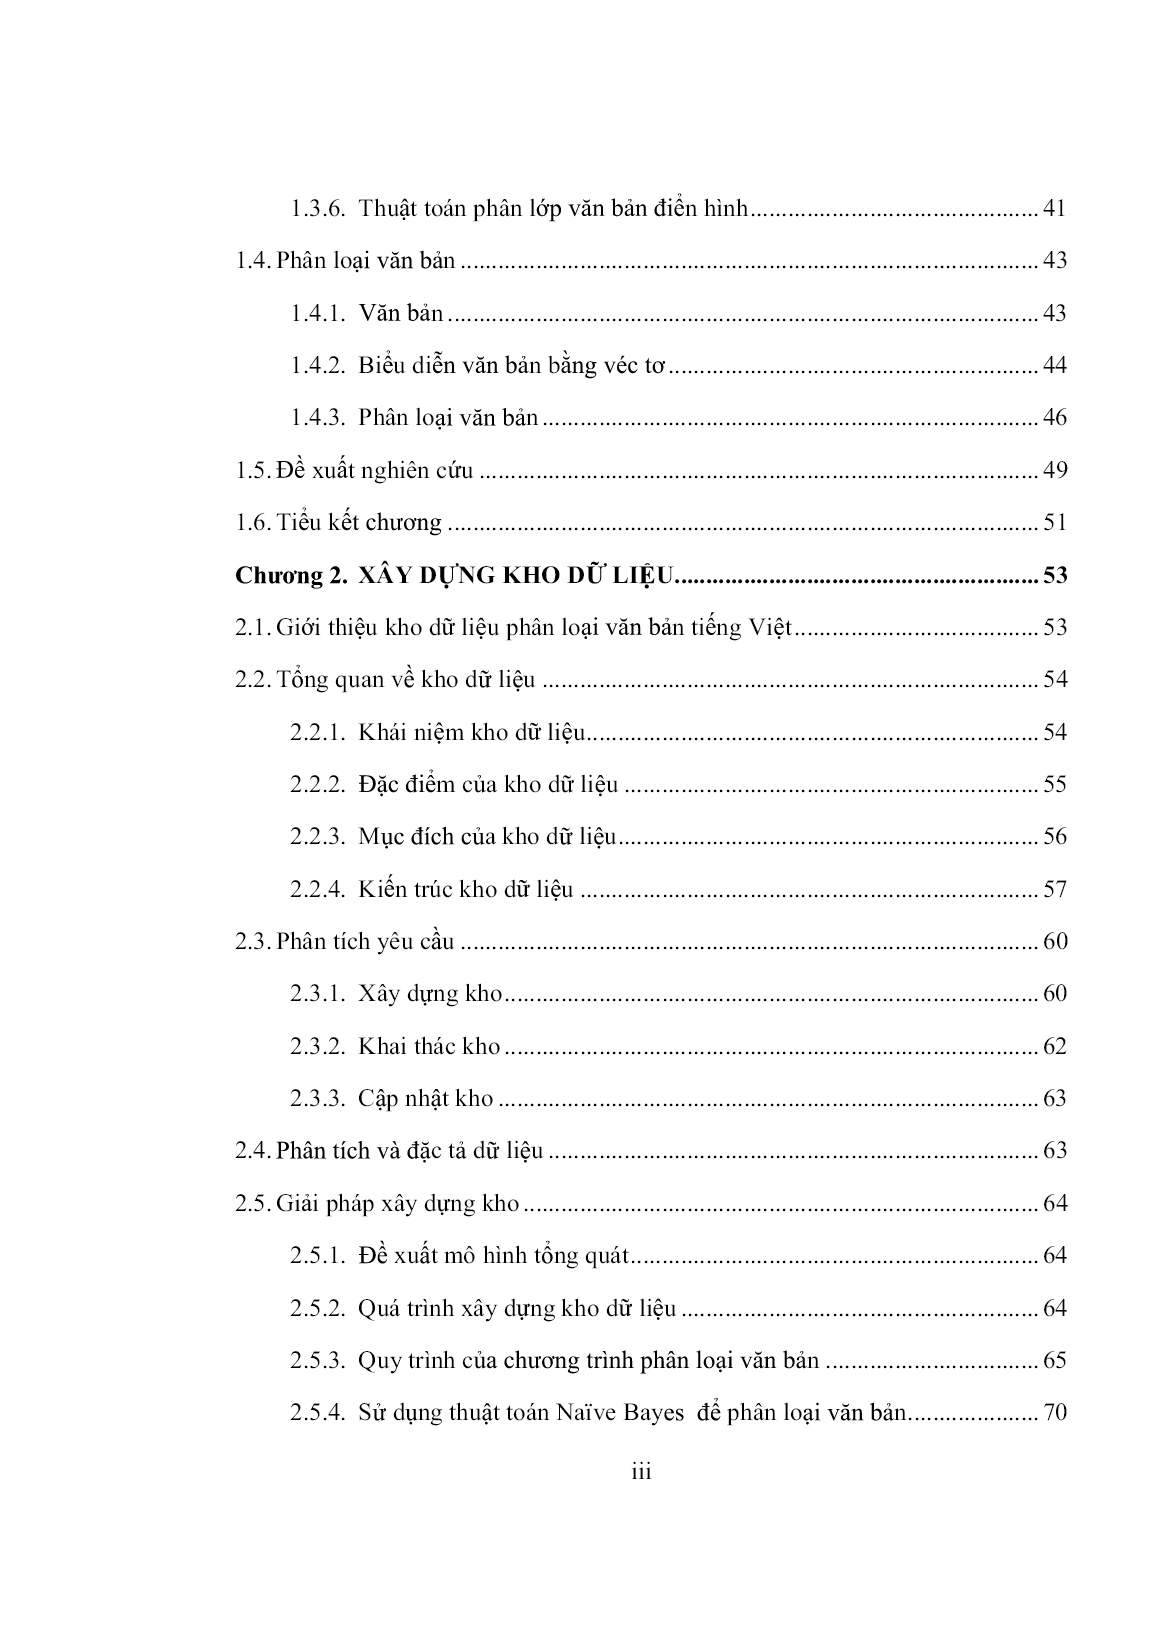 Luận án Nghiên cứu ứng dụng kỹ thuật học bán giám sát vào lĩnh vực phân loại văn bản tiếng Việt trang 5